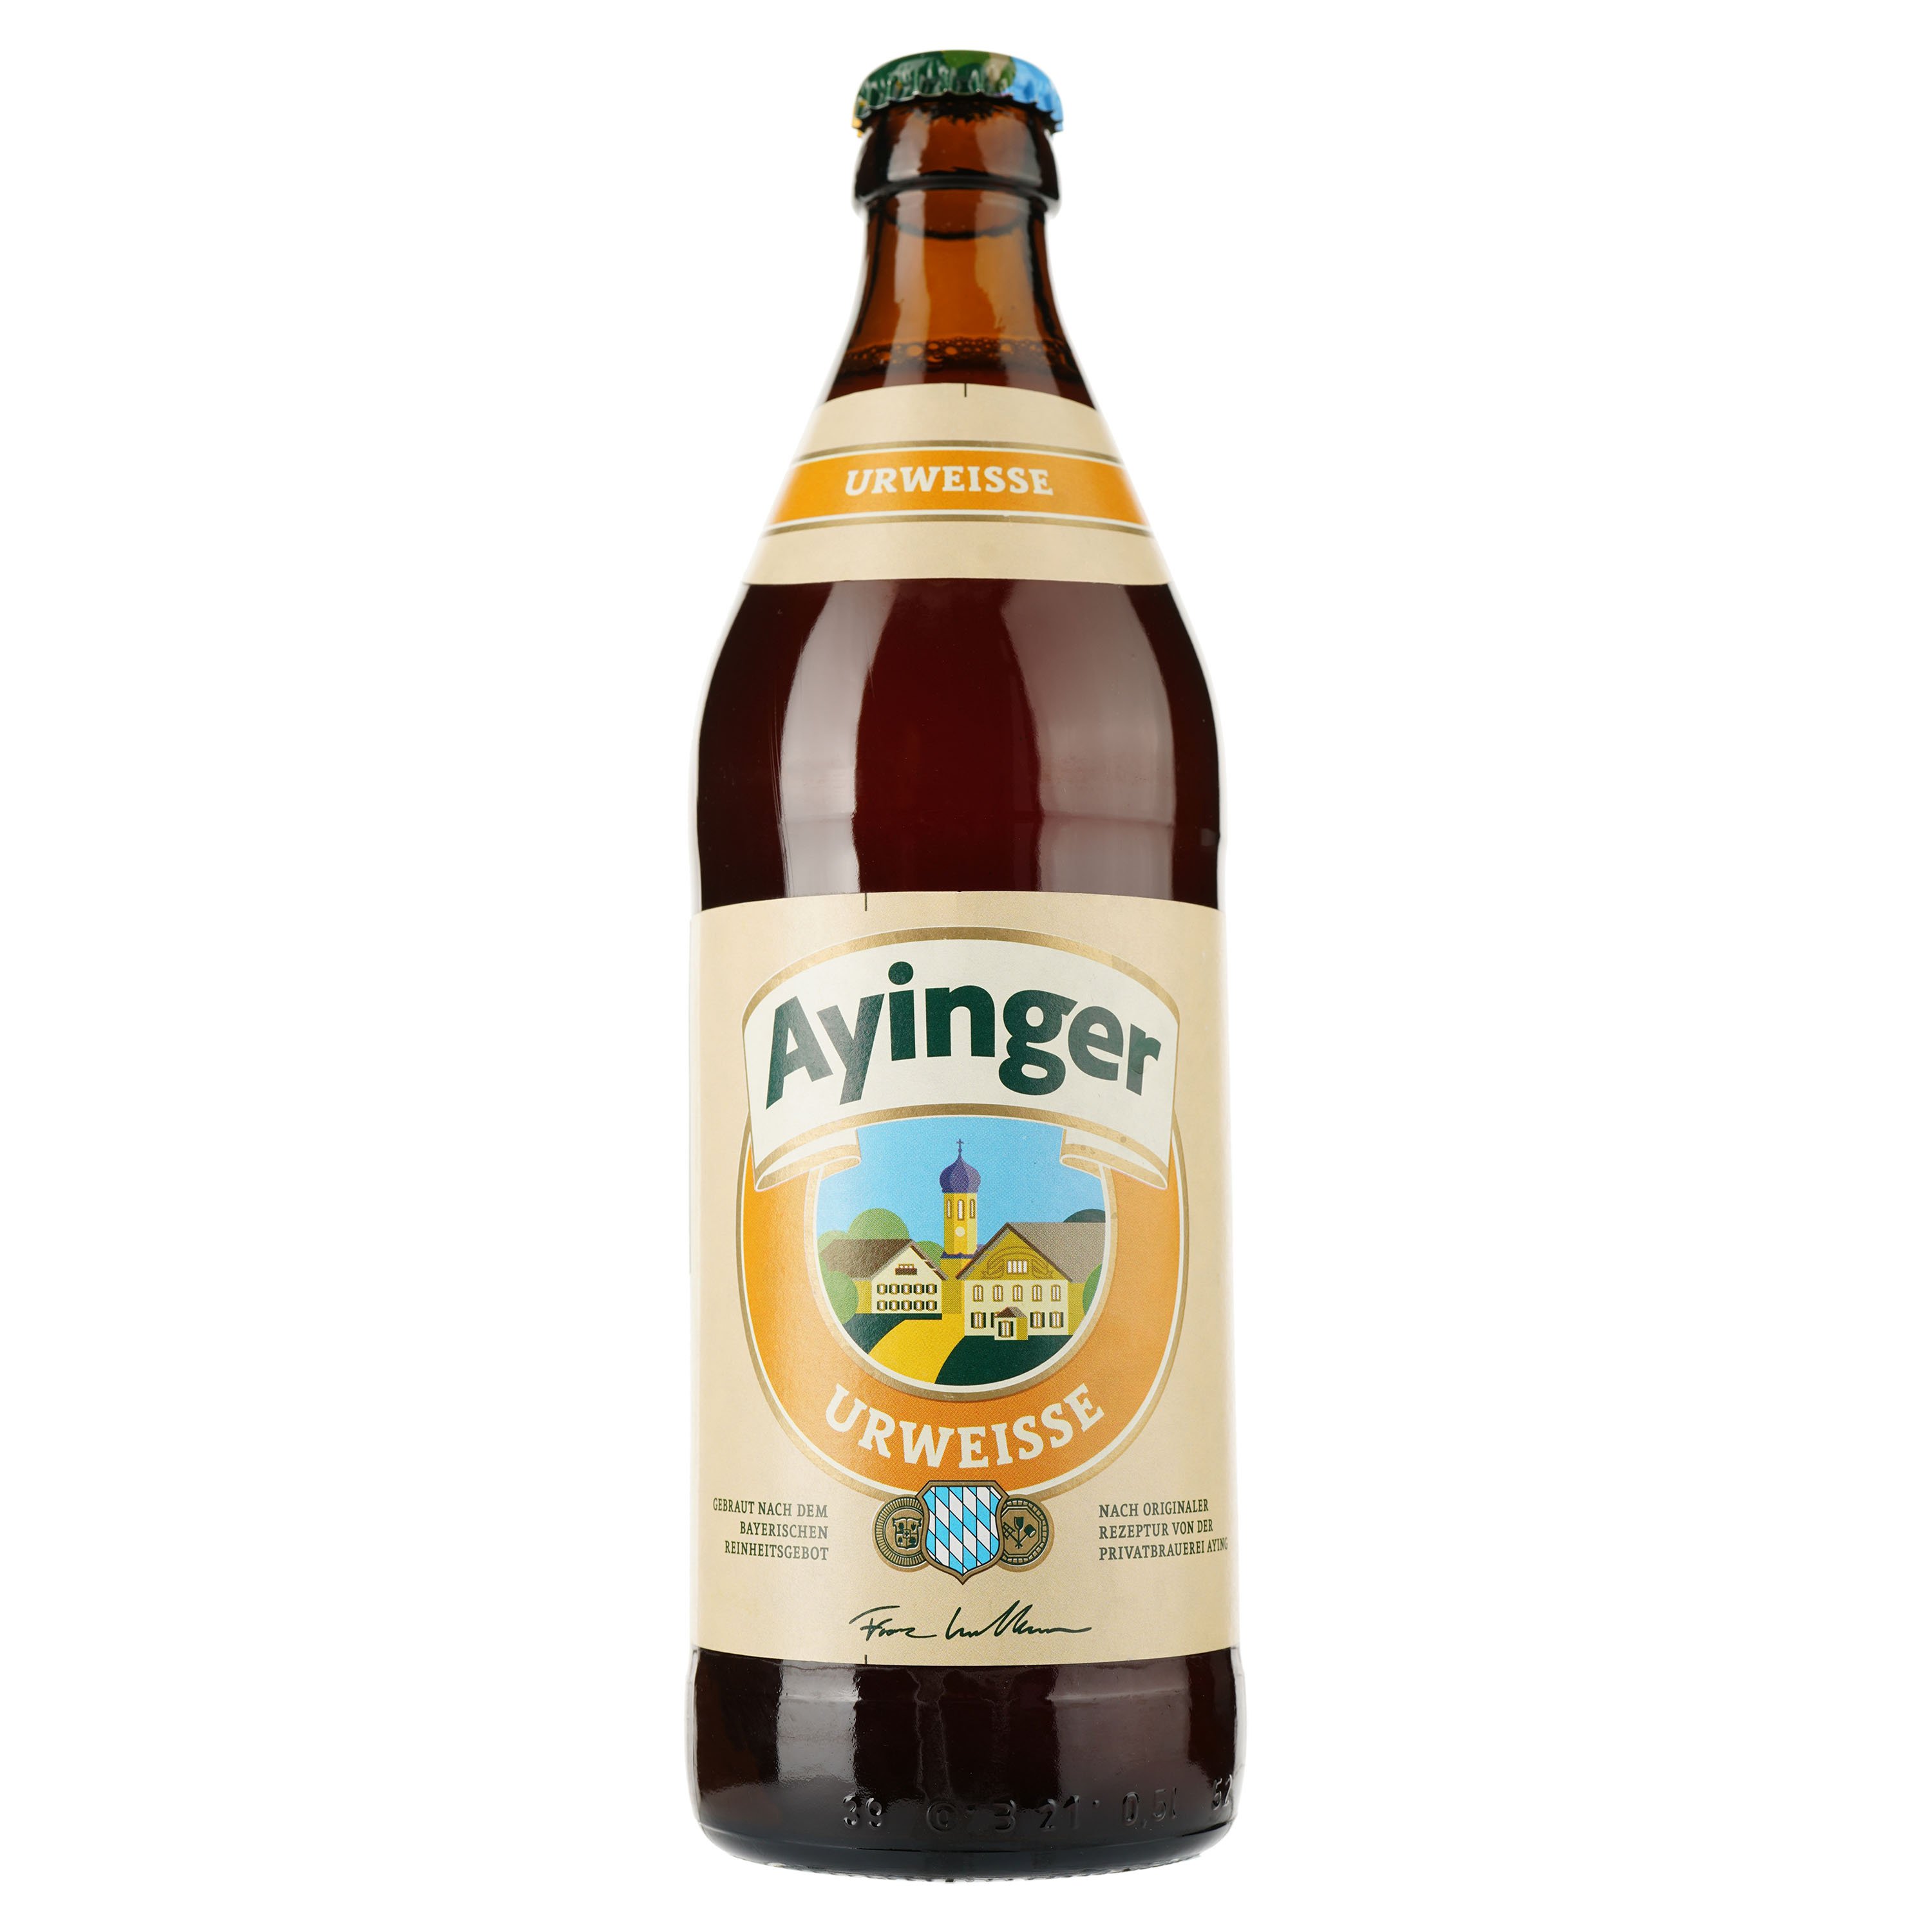 Пиво Ayinger Urweisse светлое, фильтрованное, пастеризованное, 5,8%, 0,5 л - фото 1